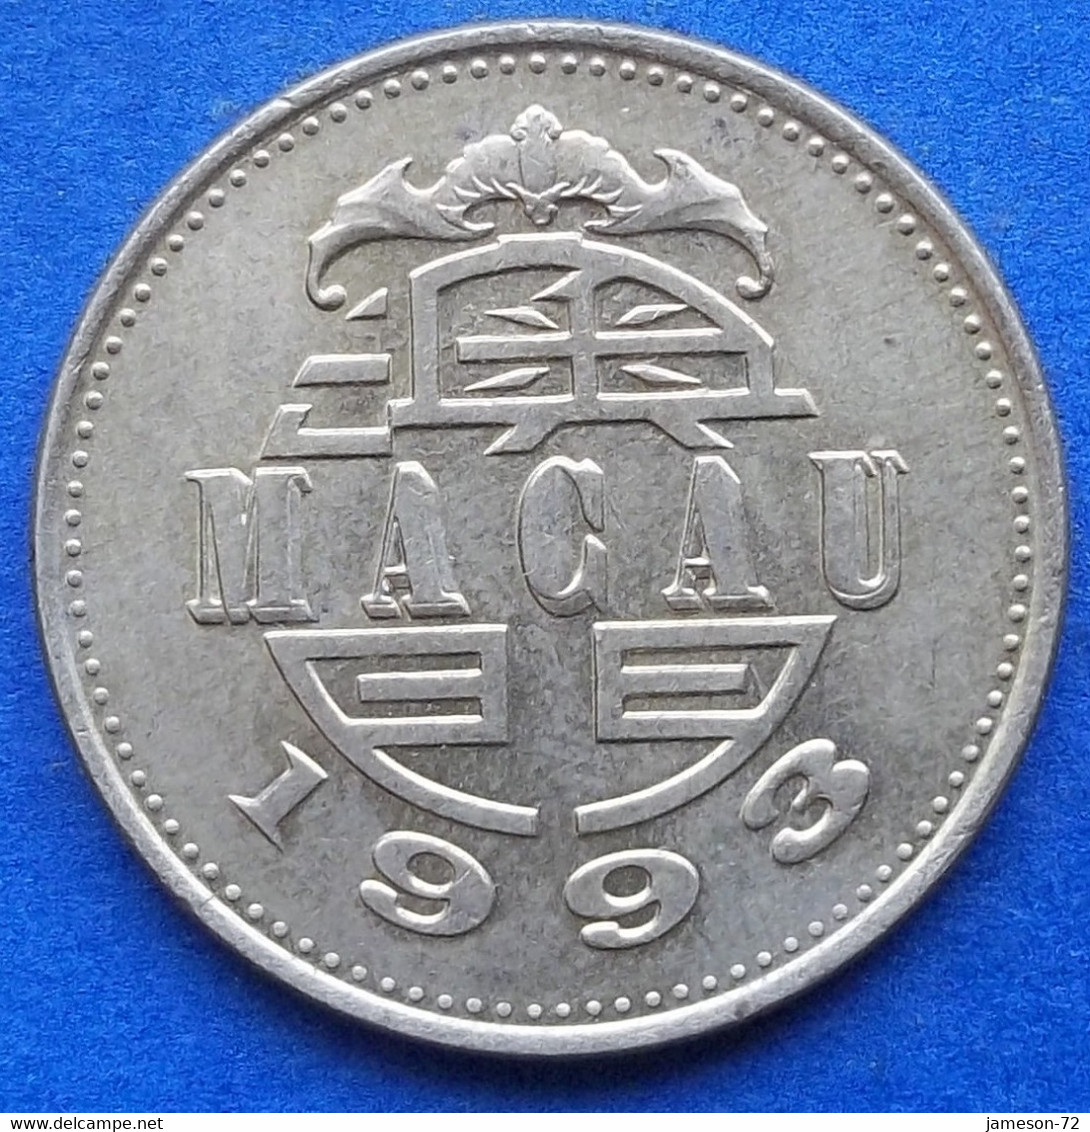 MACAU - 50 Avos 1993 "Dragon Dance" KM# 72 SAR (1993-) - Edelweiss Coins - Macau